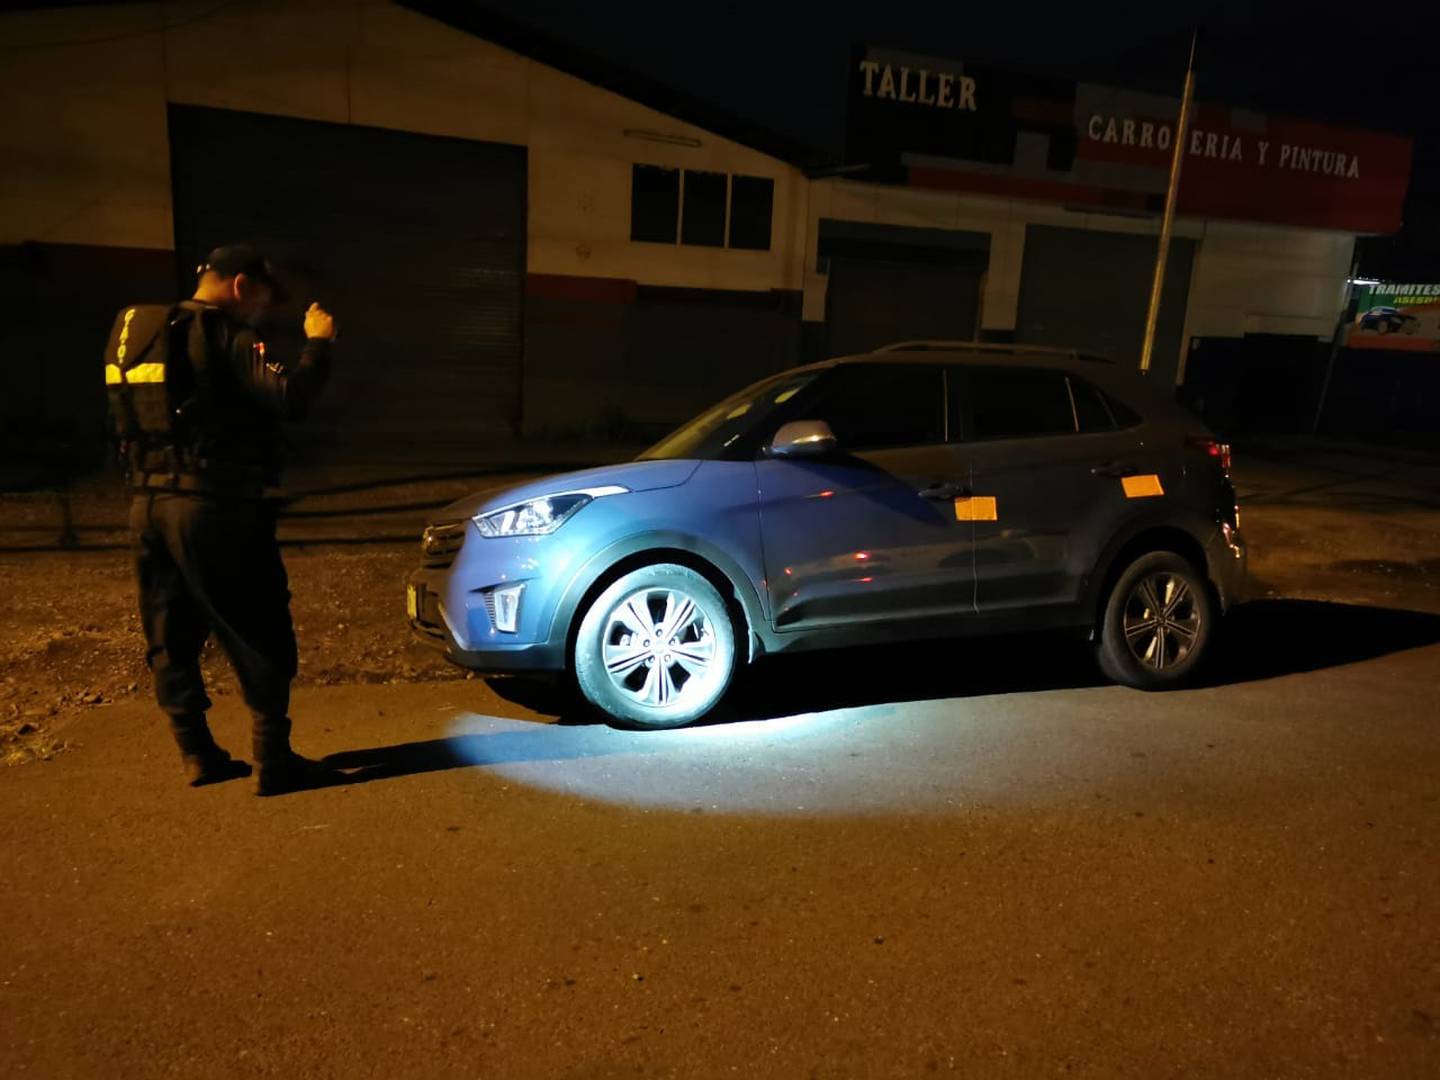 Delincuentes asaltan vivienda y roban 4 vehículos en Pococí, uno de los carros fue recuperado por la Fuerza Pública. Foto Reyner Montero.